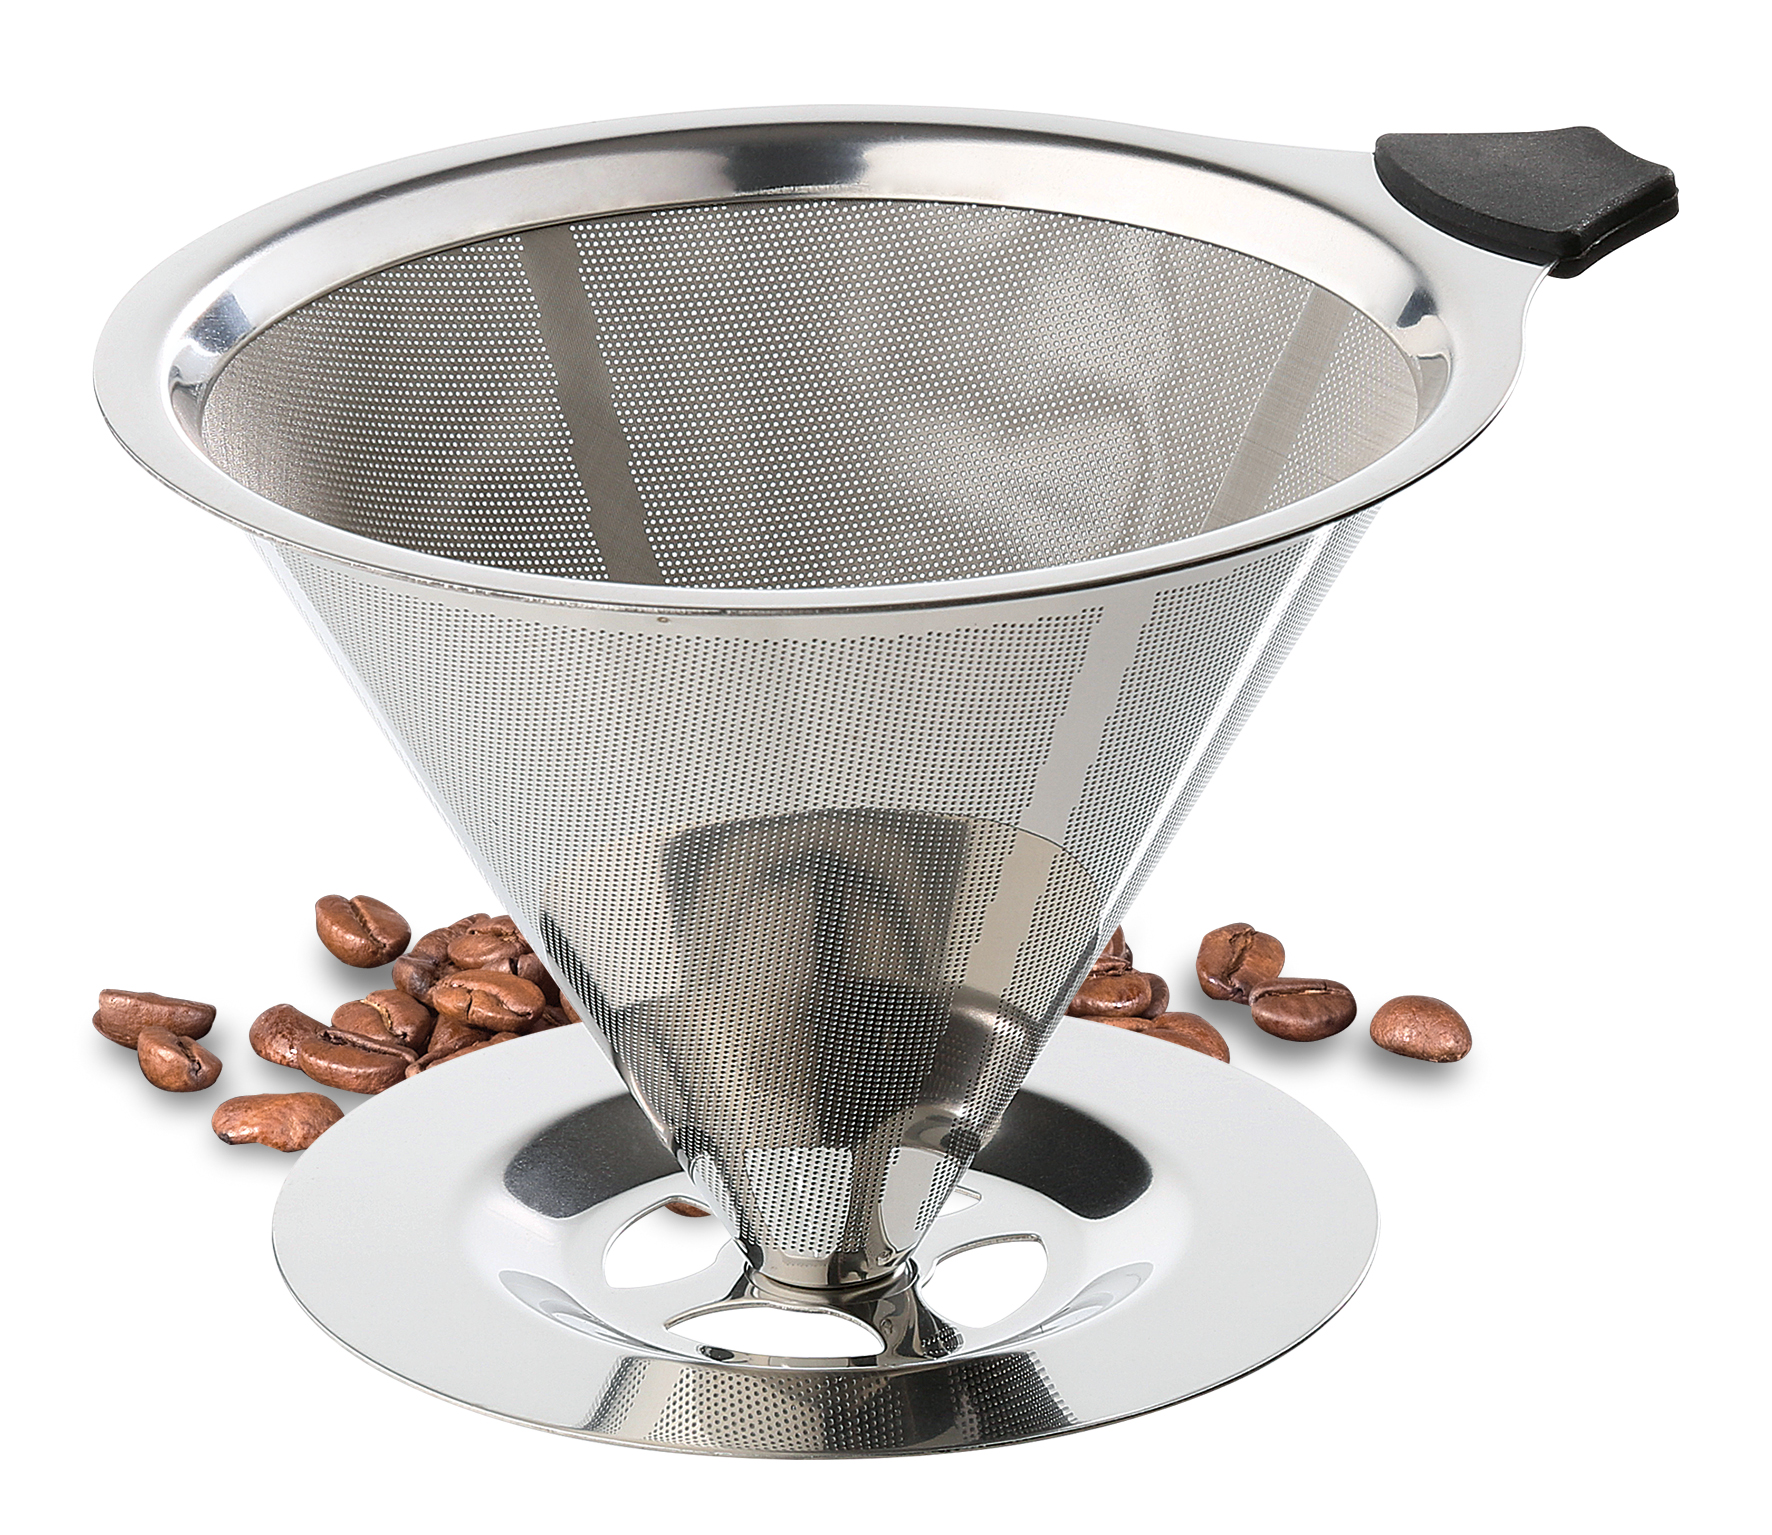 Dauerfilter für Kaffee mit Standfuß, Edelstahl